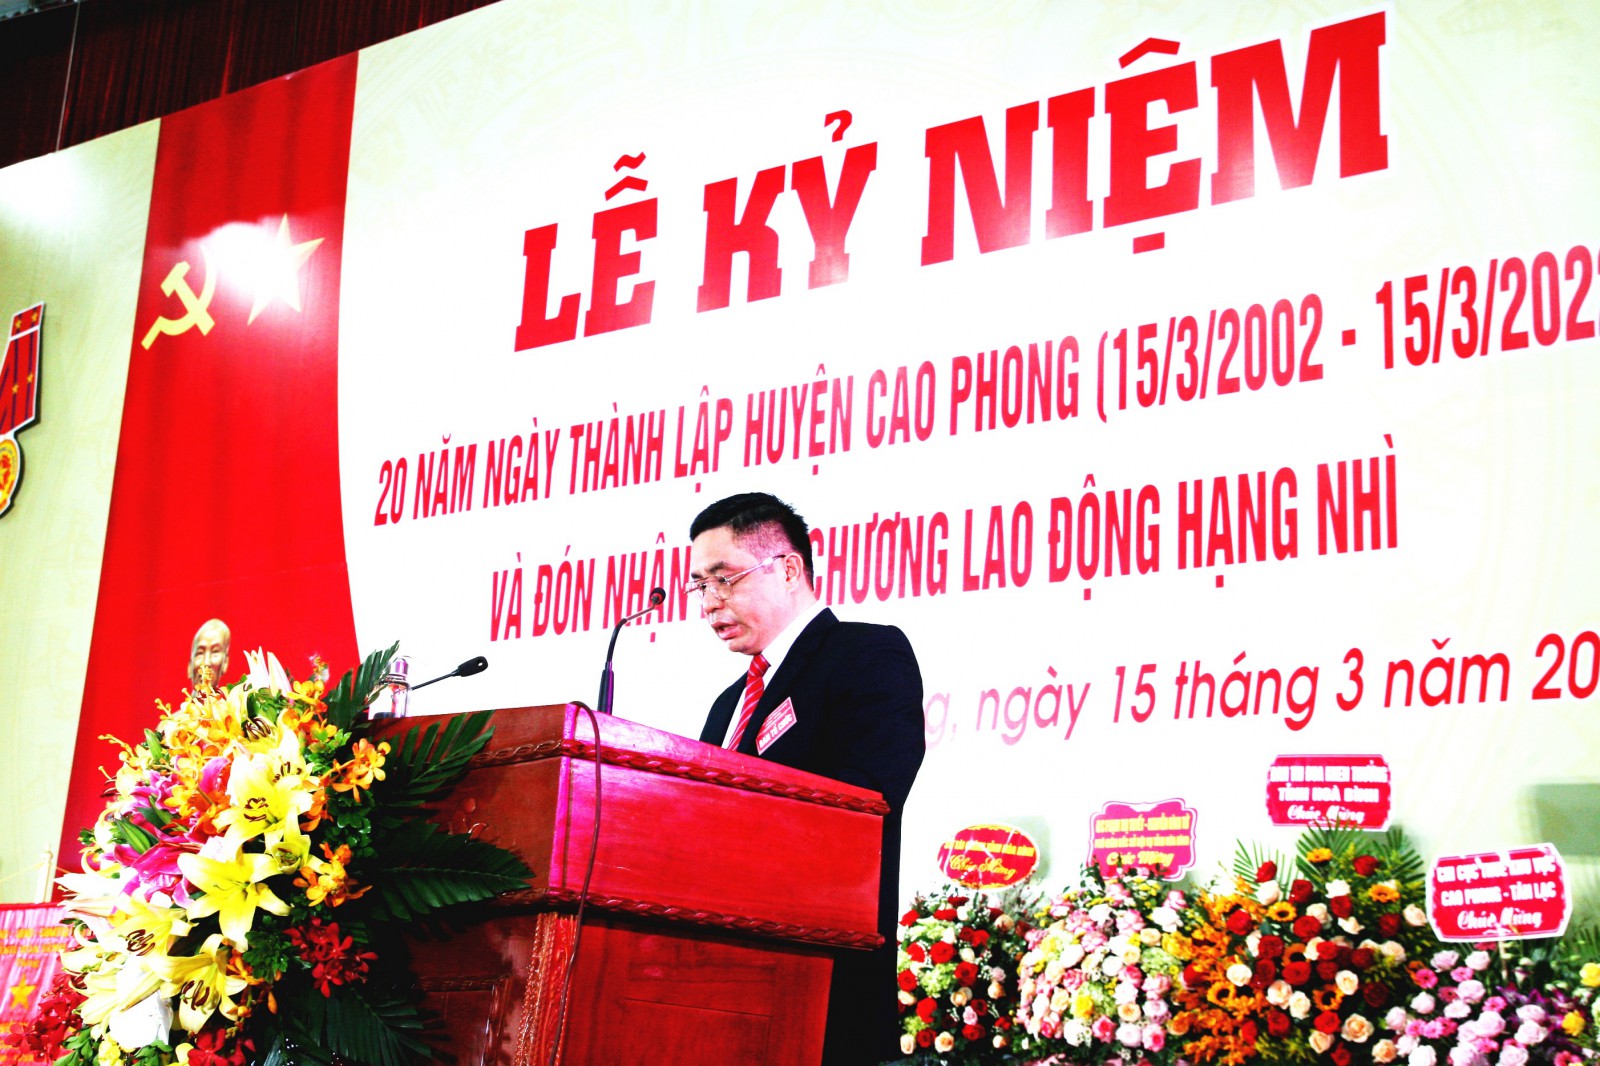 Theo ông Quách Văn Ngoan – Chủ tịch UBND huyện Cao Phong, 20 năm thành lập huyện là một mốc son quan trọng, thể hiện sự năng động, sáng tạo và quyết tâm cao của cả hệ thống chính trị, đưa Cao Phong trở thành huyện phát triển của tỉnh Hòa Bình.